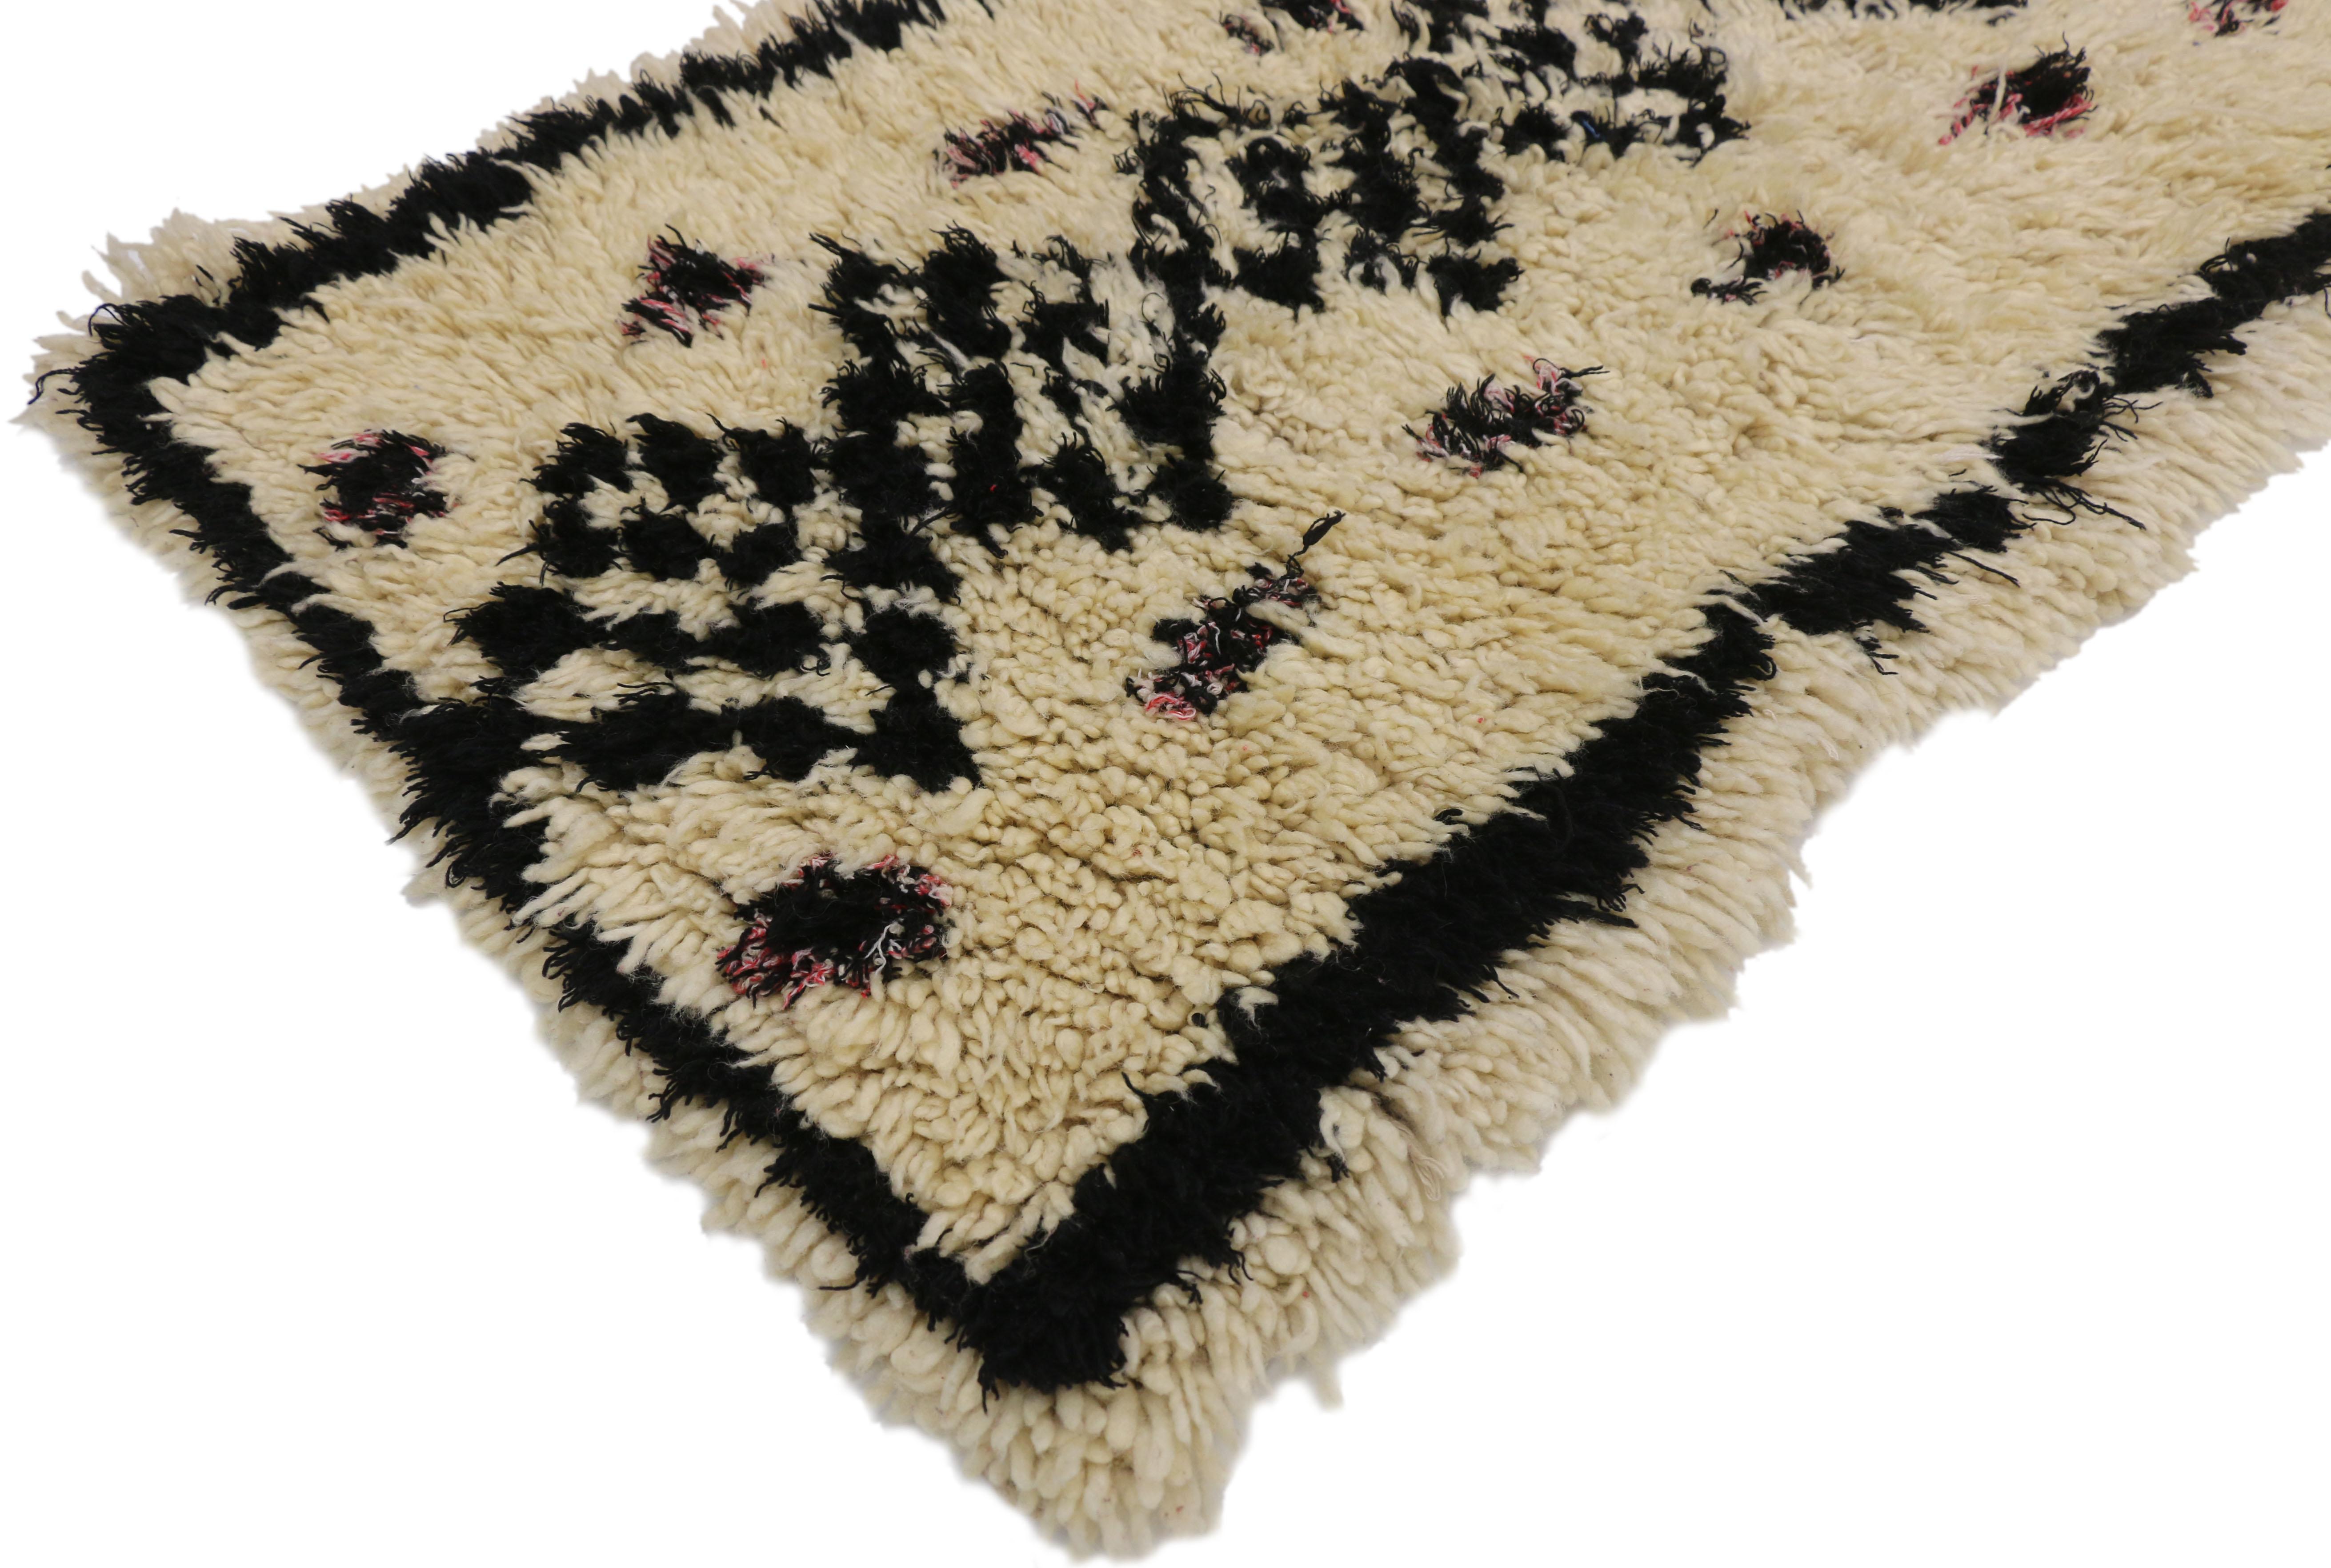 20850, tapis vintage marocain Azilal, tapis berbère Boucherouite. Ce tapis marocain vintage Azilal présente une colonne de losanges empilés remplis d'un motif en damier, connu sous le nom d'yeux de perdrix représentant la beauté. Les diamants sont